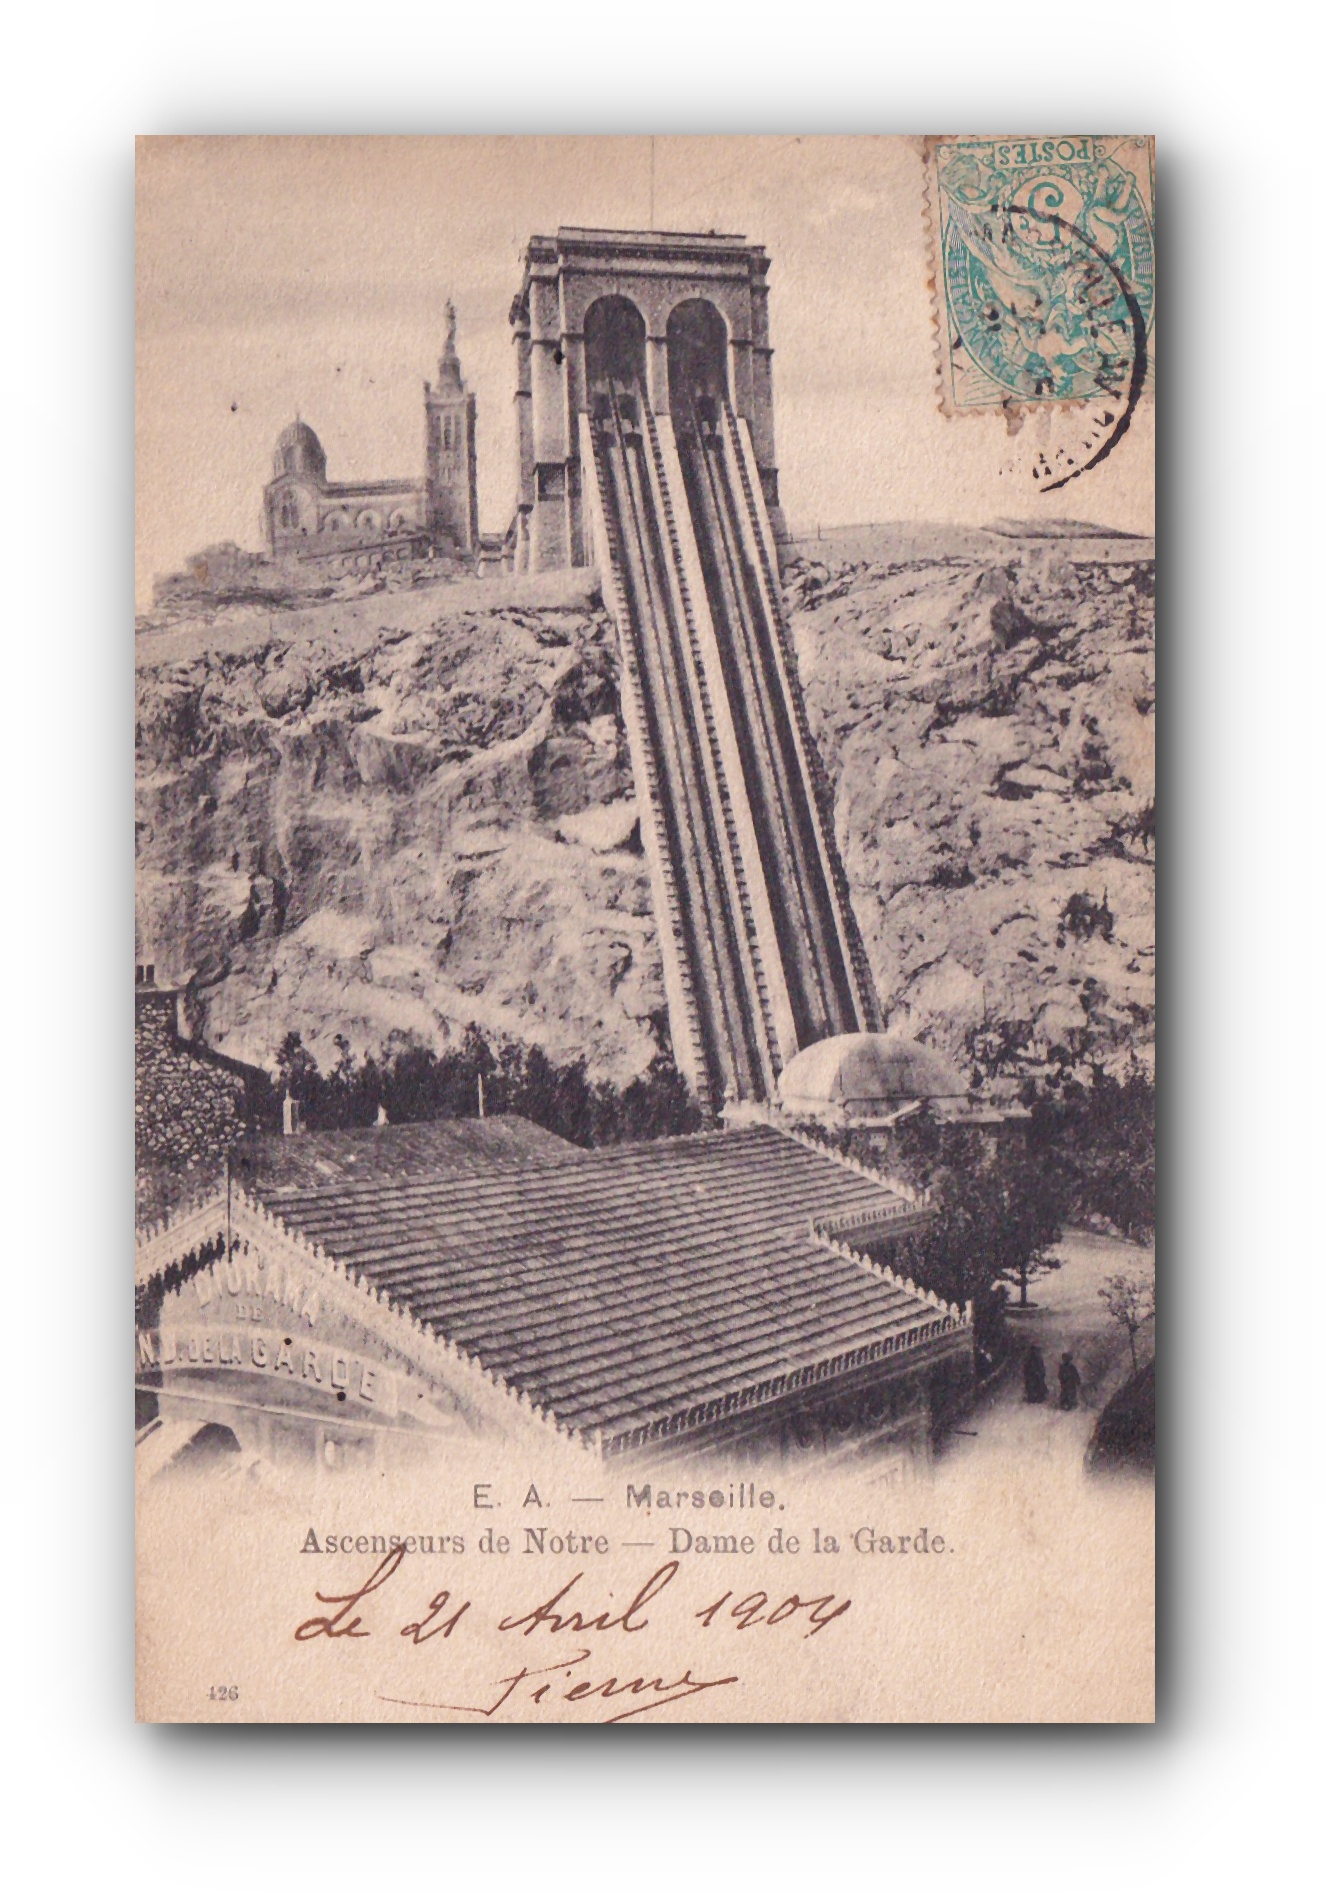 - Ascenseurs de Notre - Dame de la Garde - 21.04.1904 -